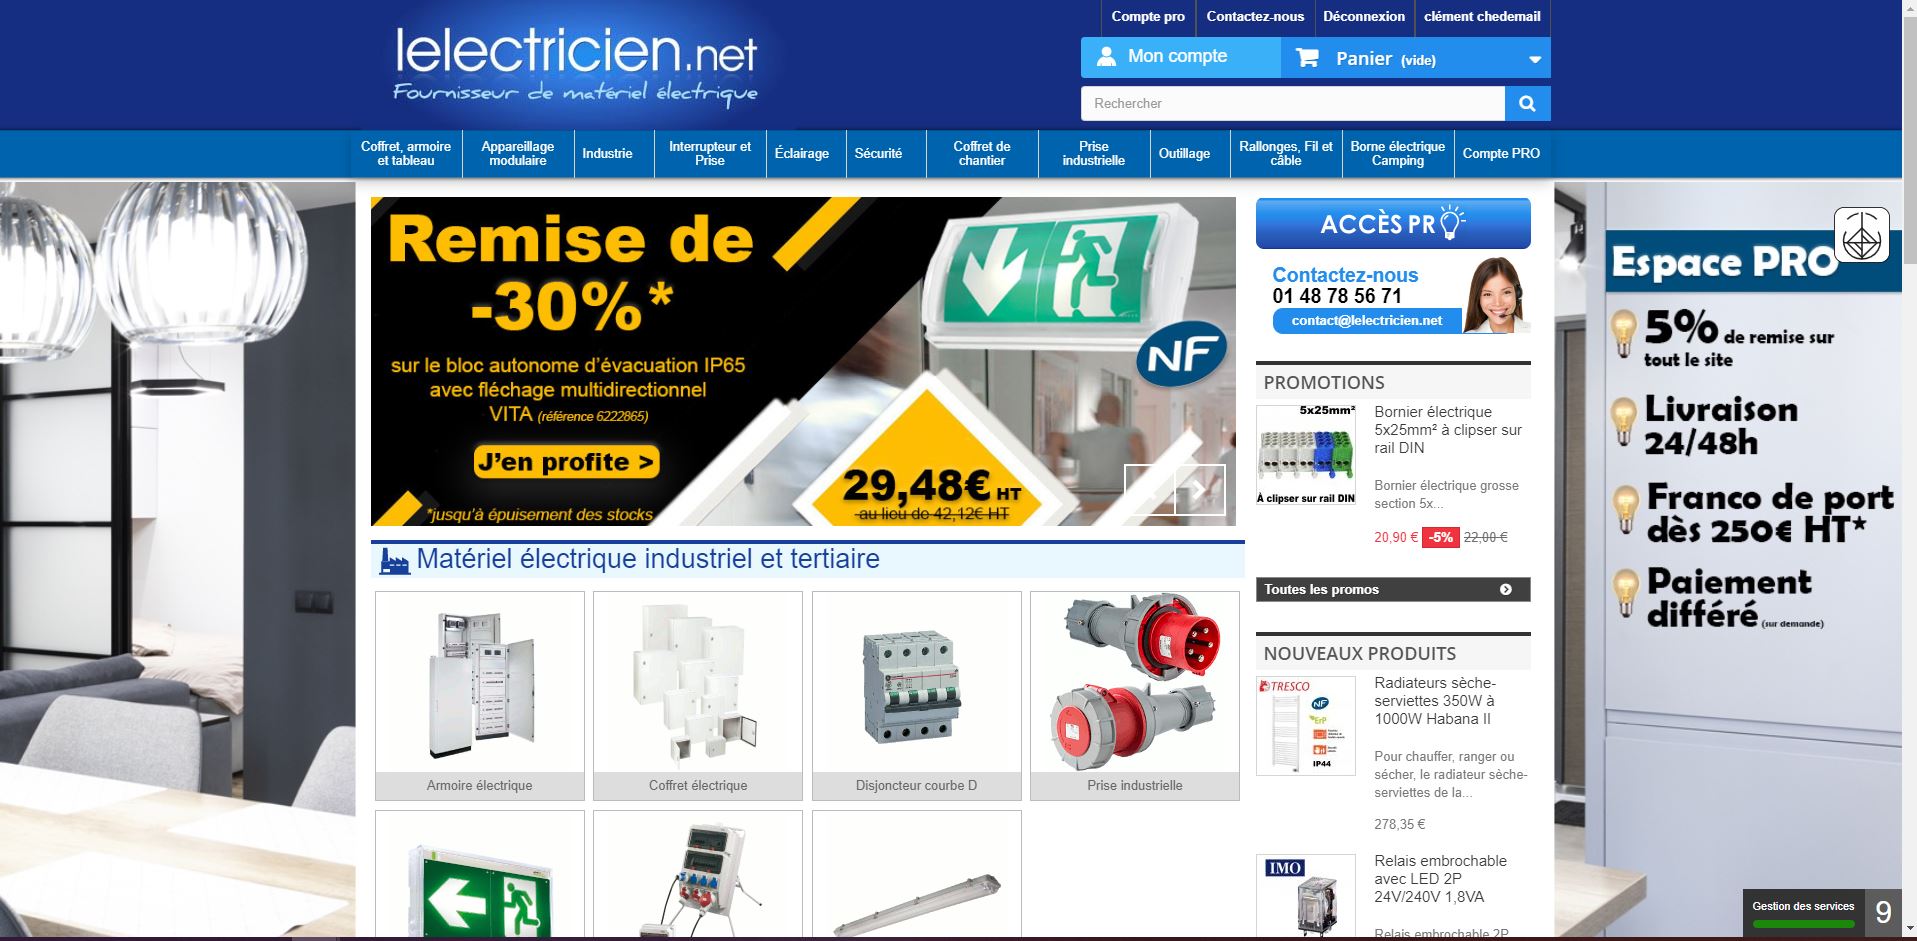 ancien compte pro materiel electrique lelectricien.net